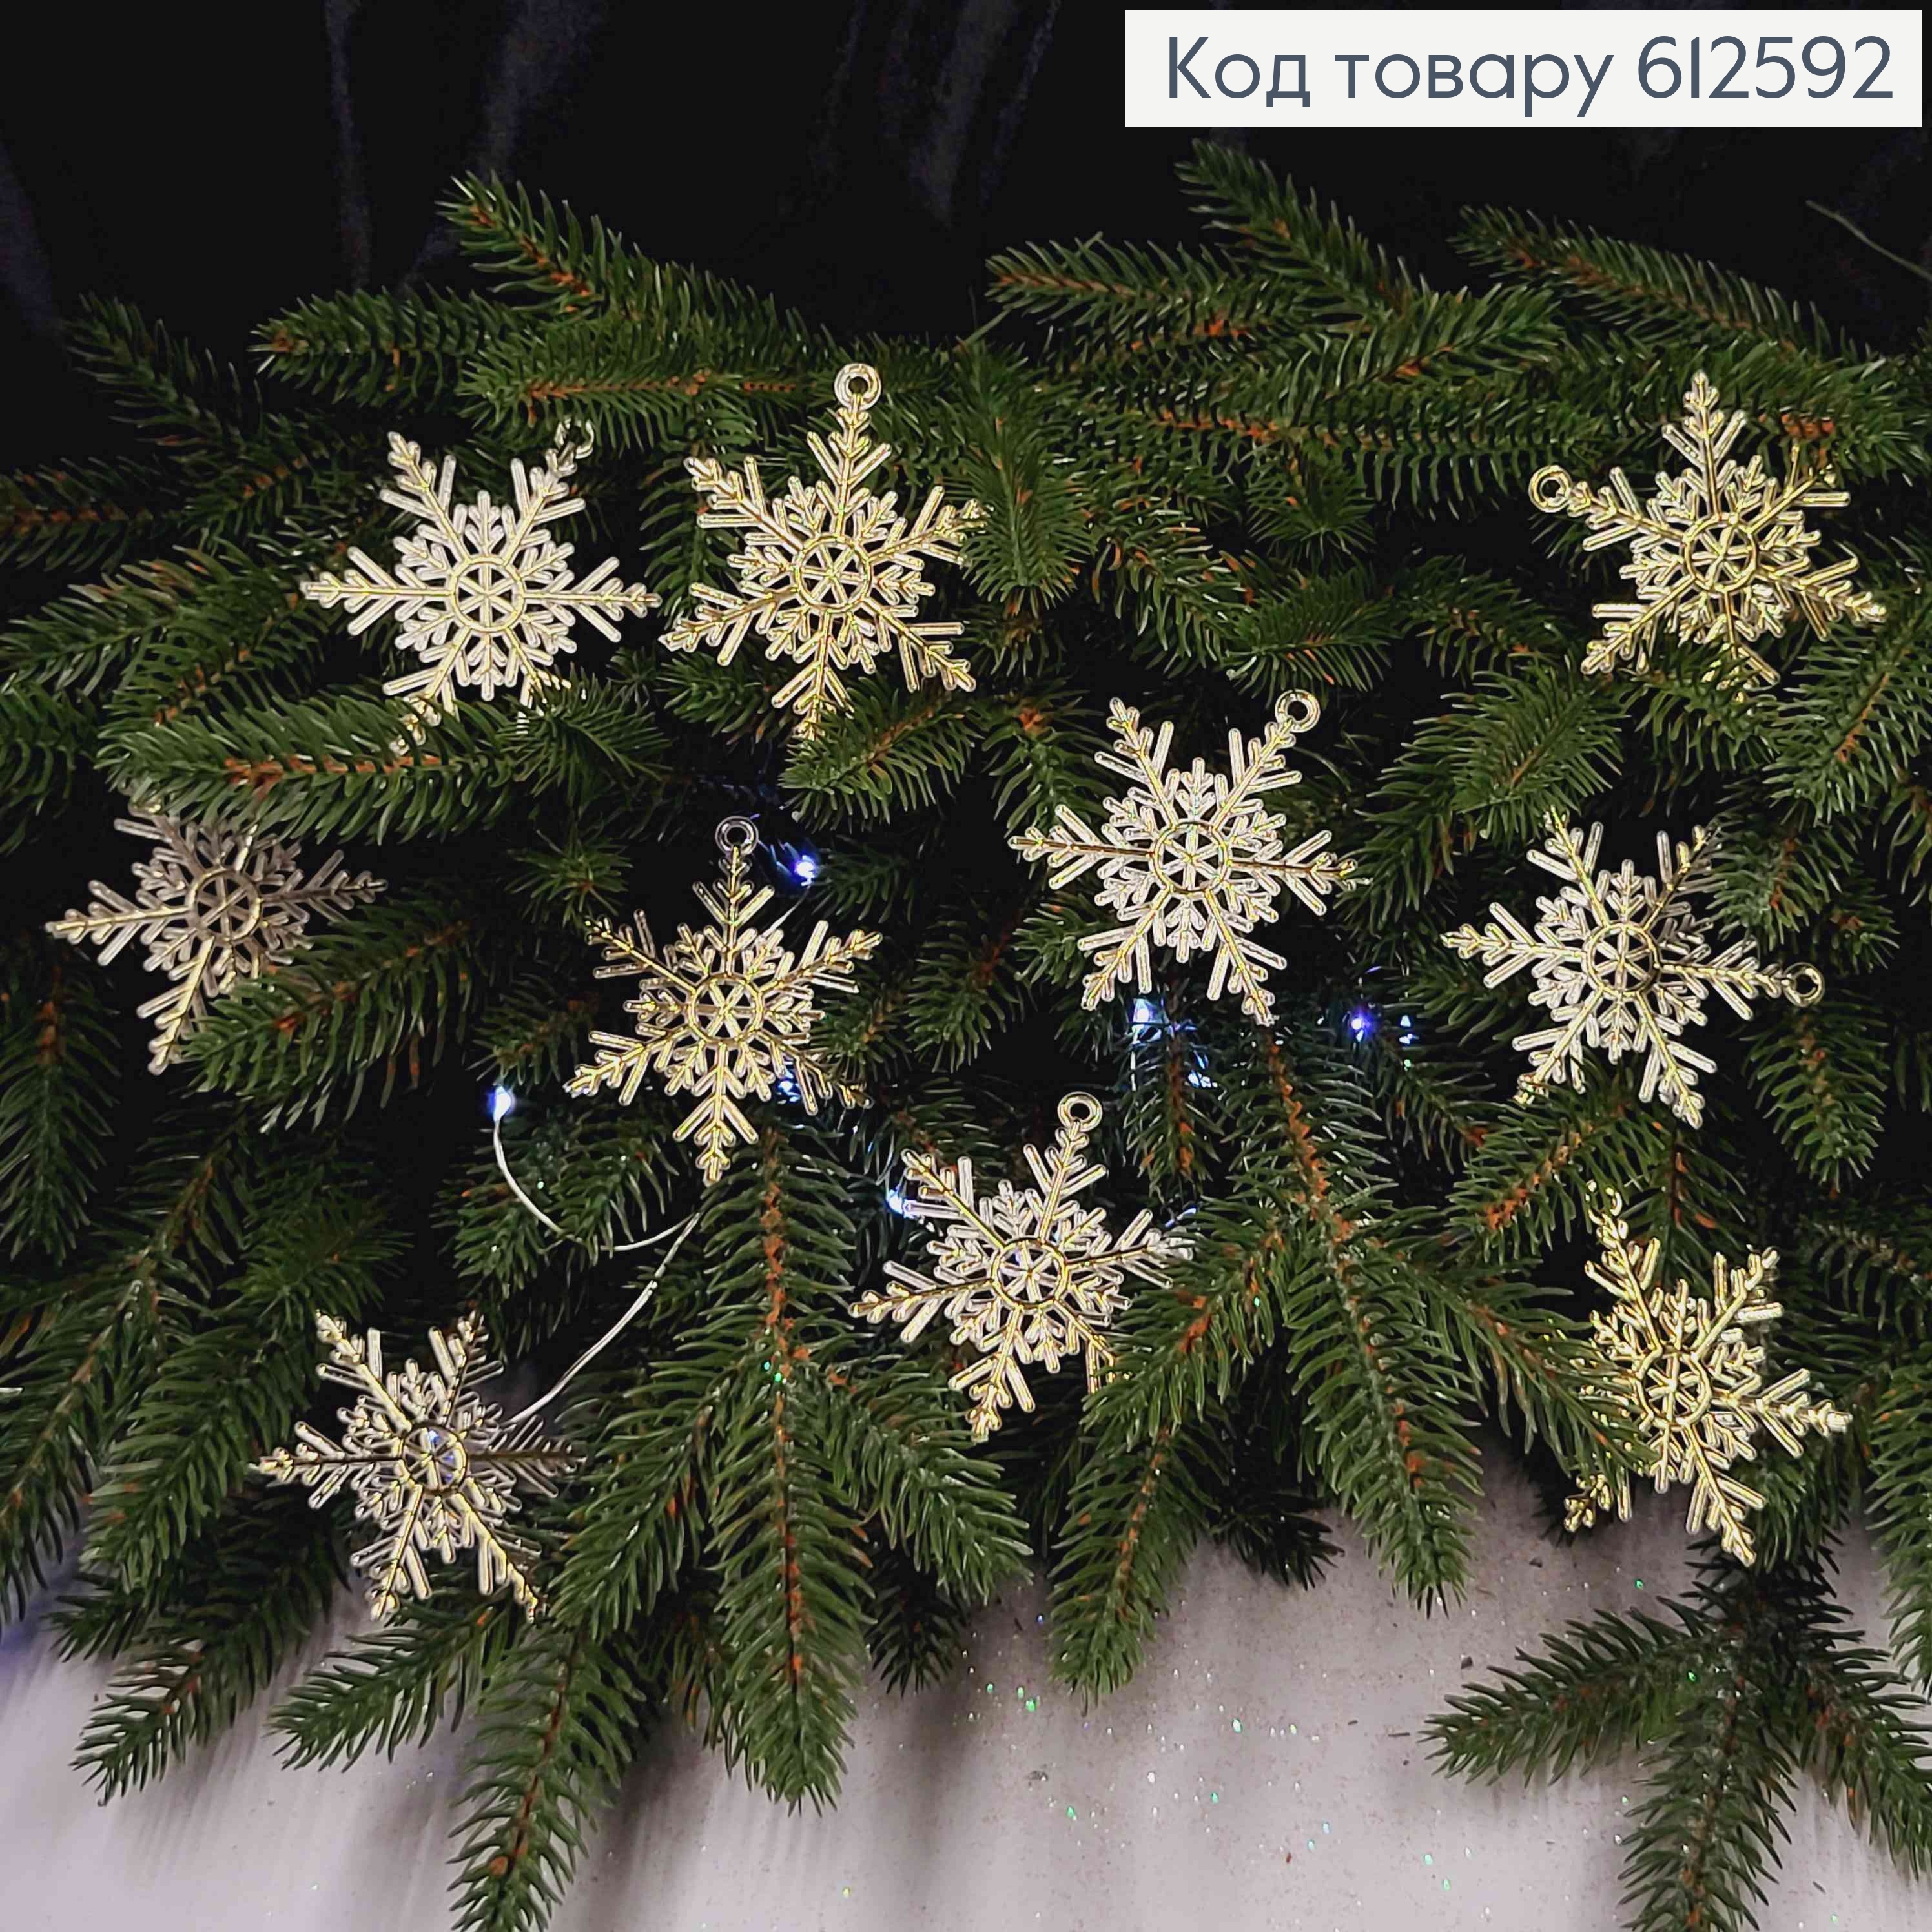 Новогодняя фигура, набор Снежинок, пластик, цвет ЗОЛОТО, 10шт/уп, 6см, Украина 612592 фото 2